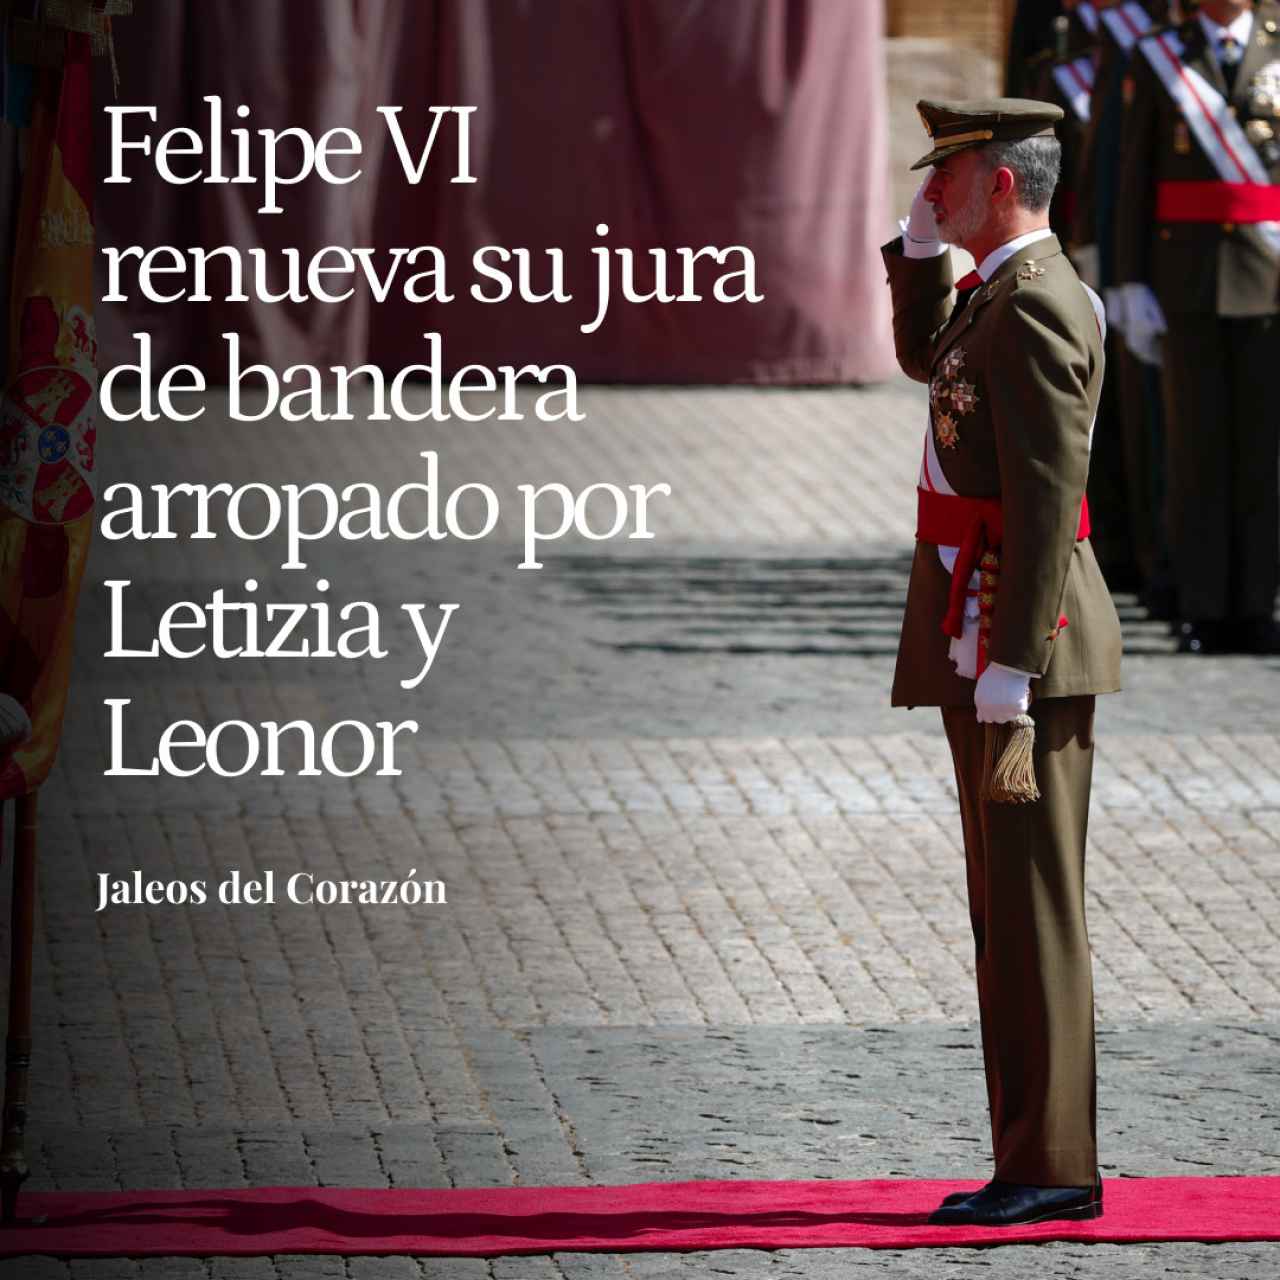 Felipe VI renueva su jura de bandera arropado por Letizia y la princesa Leonor en un histórico acto en Zaragoza